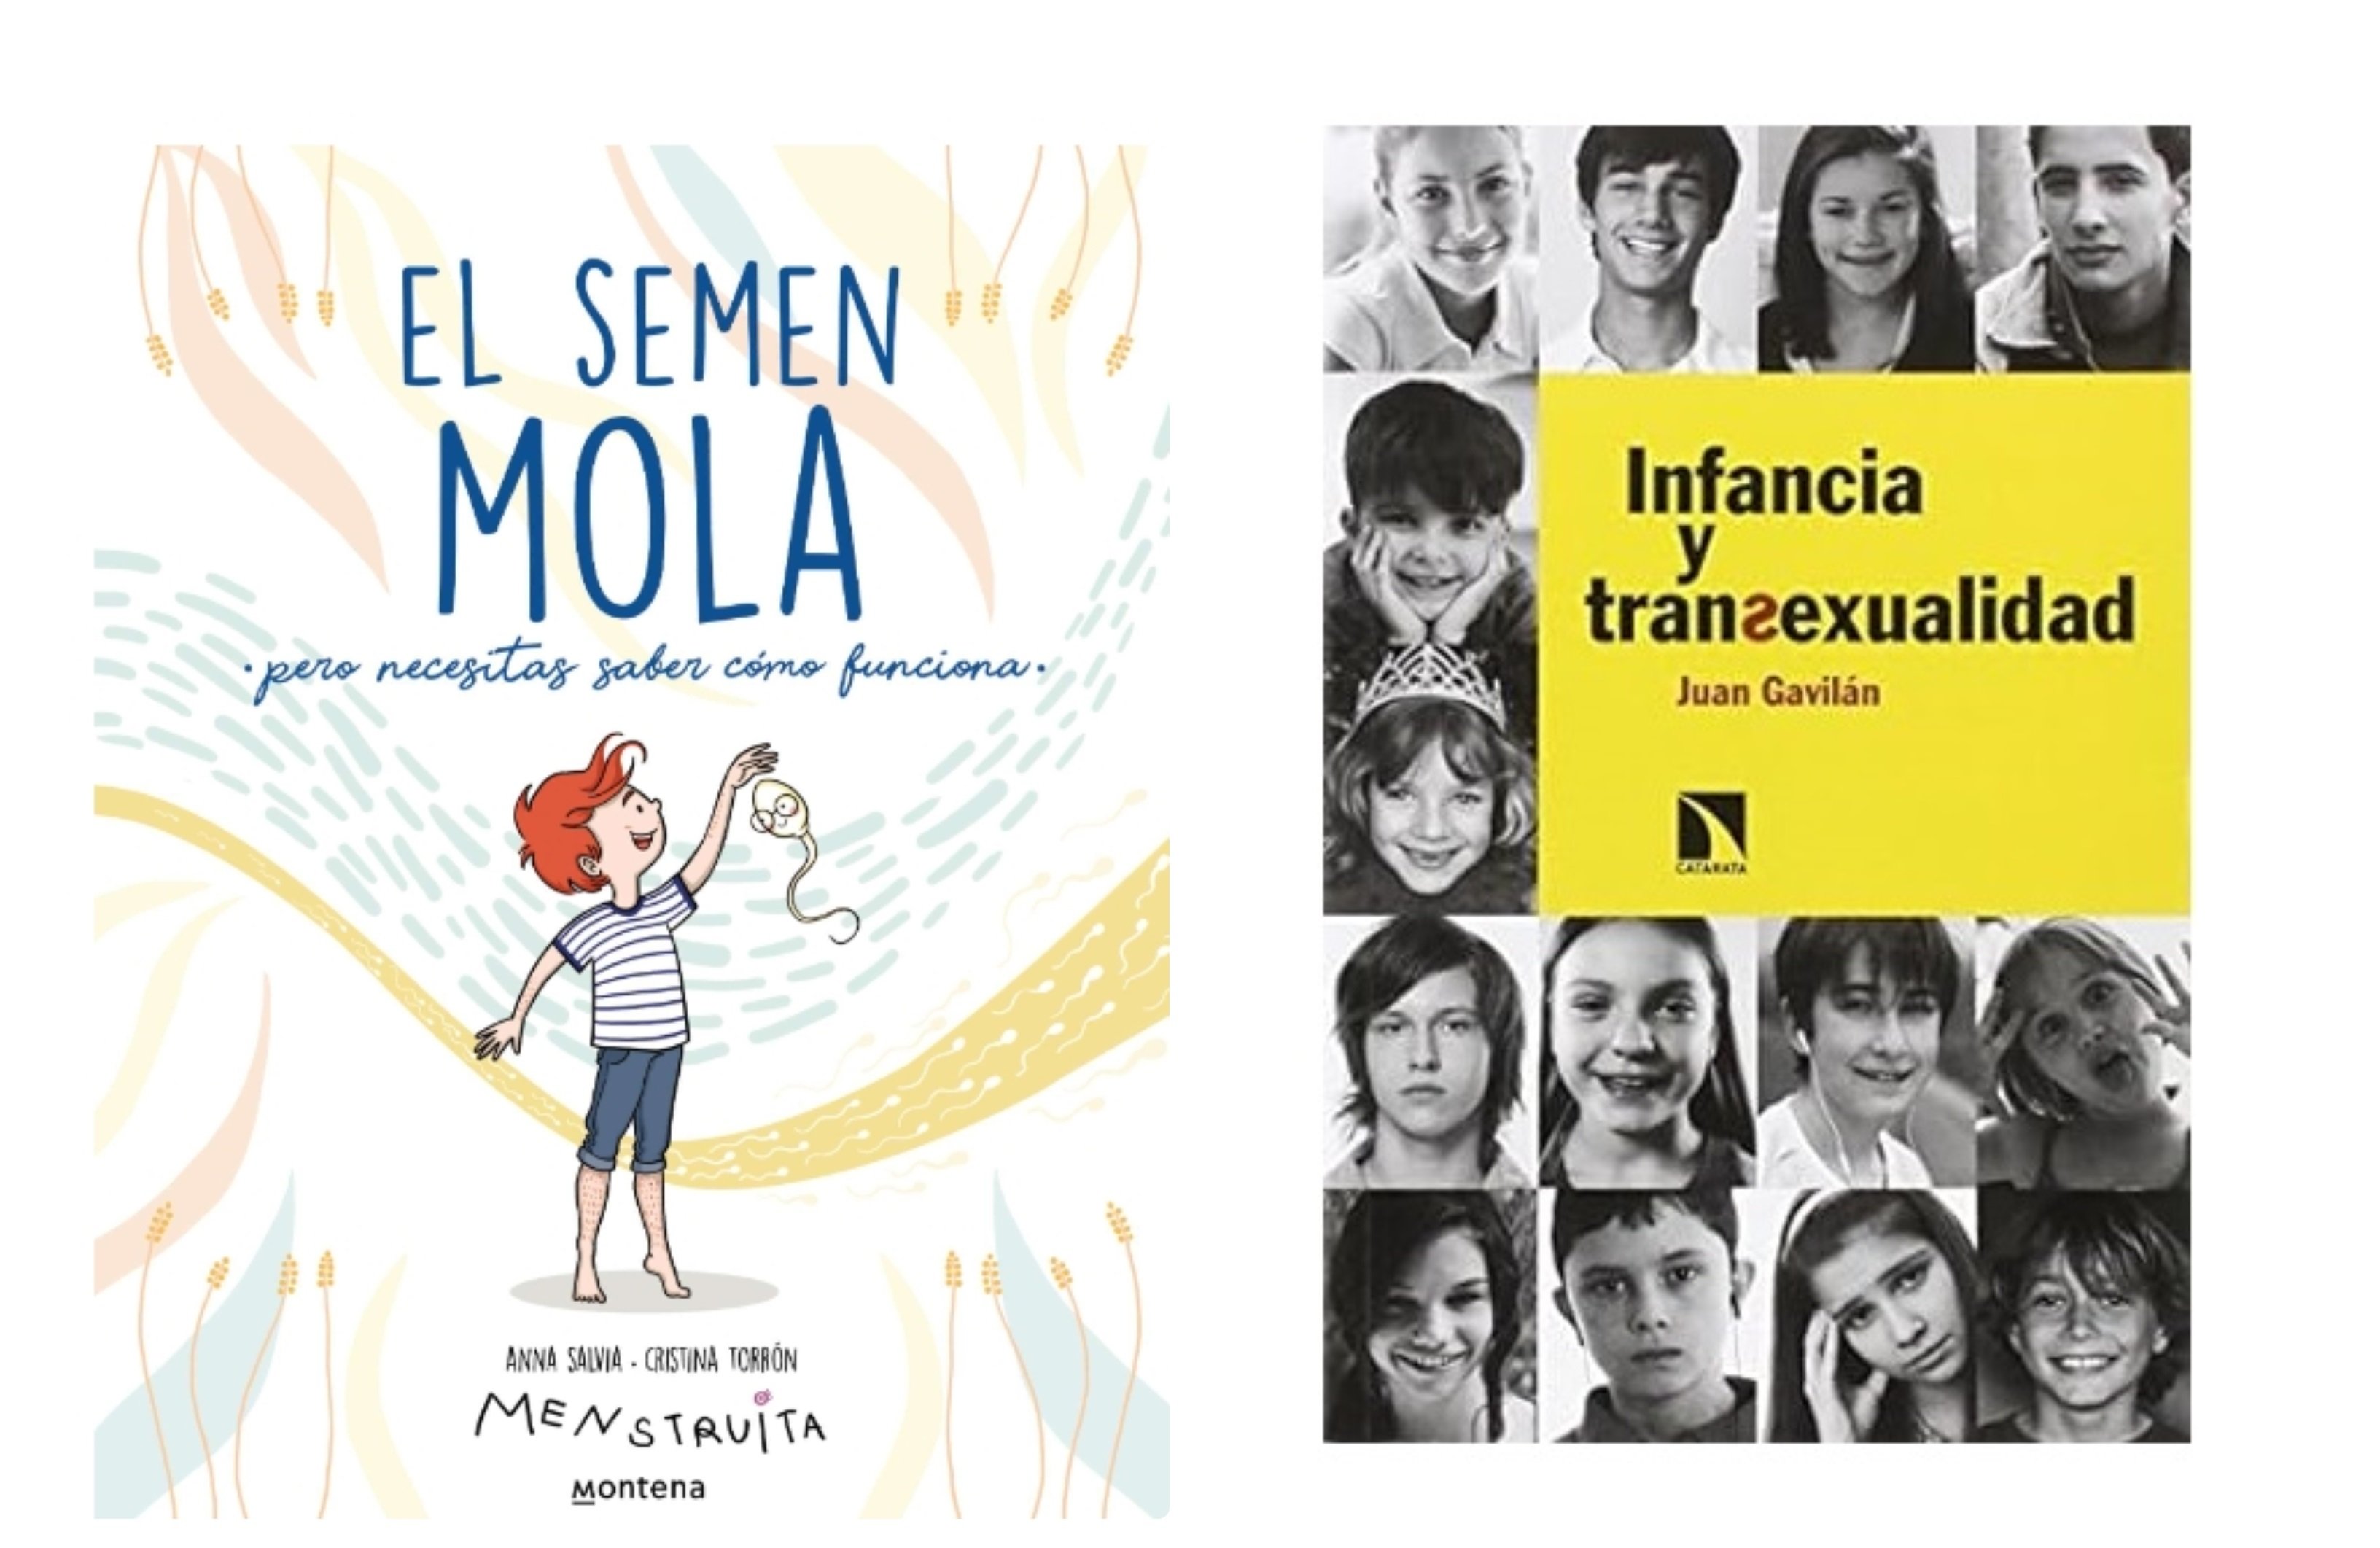 El Semen Mola: El nuevo libro de Proyecto Menstruita – Pediatría